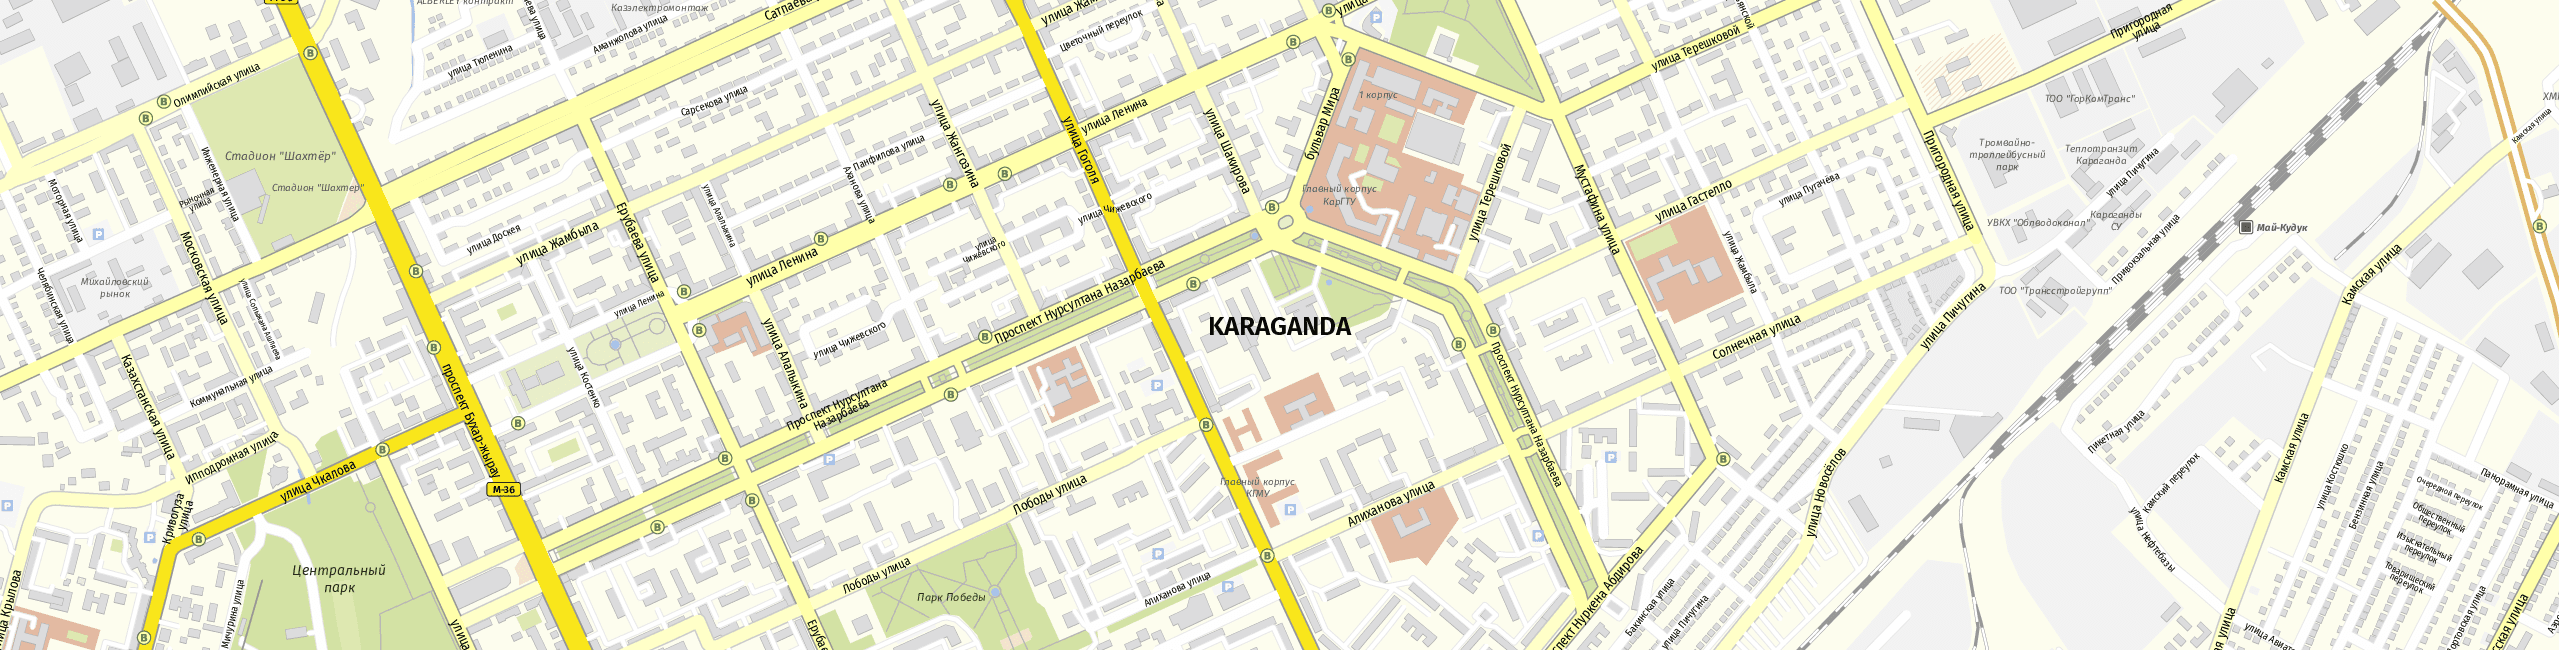 Stadtplan Karaganda zum Downloaden.